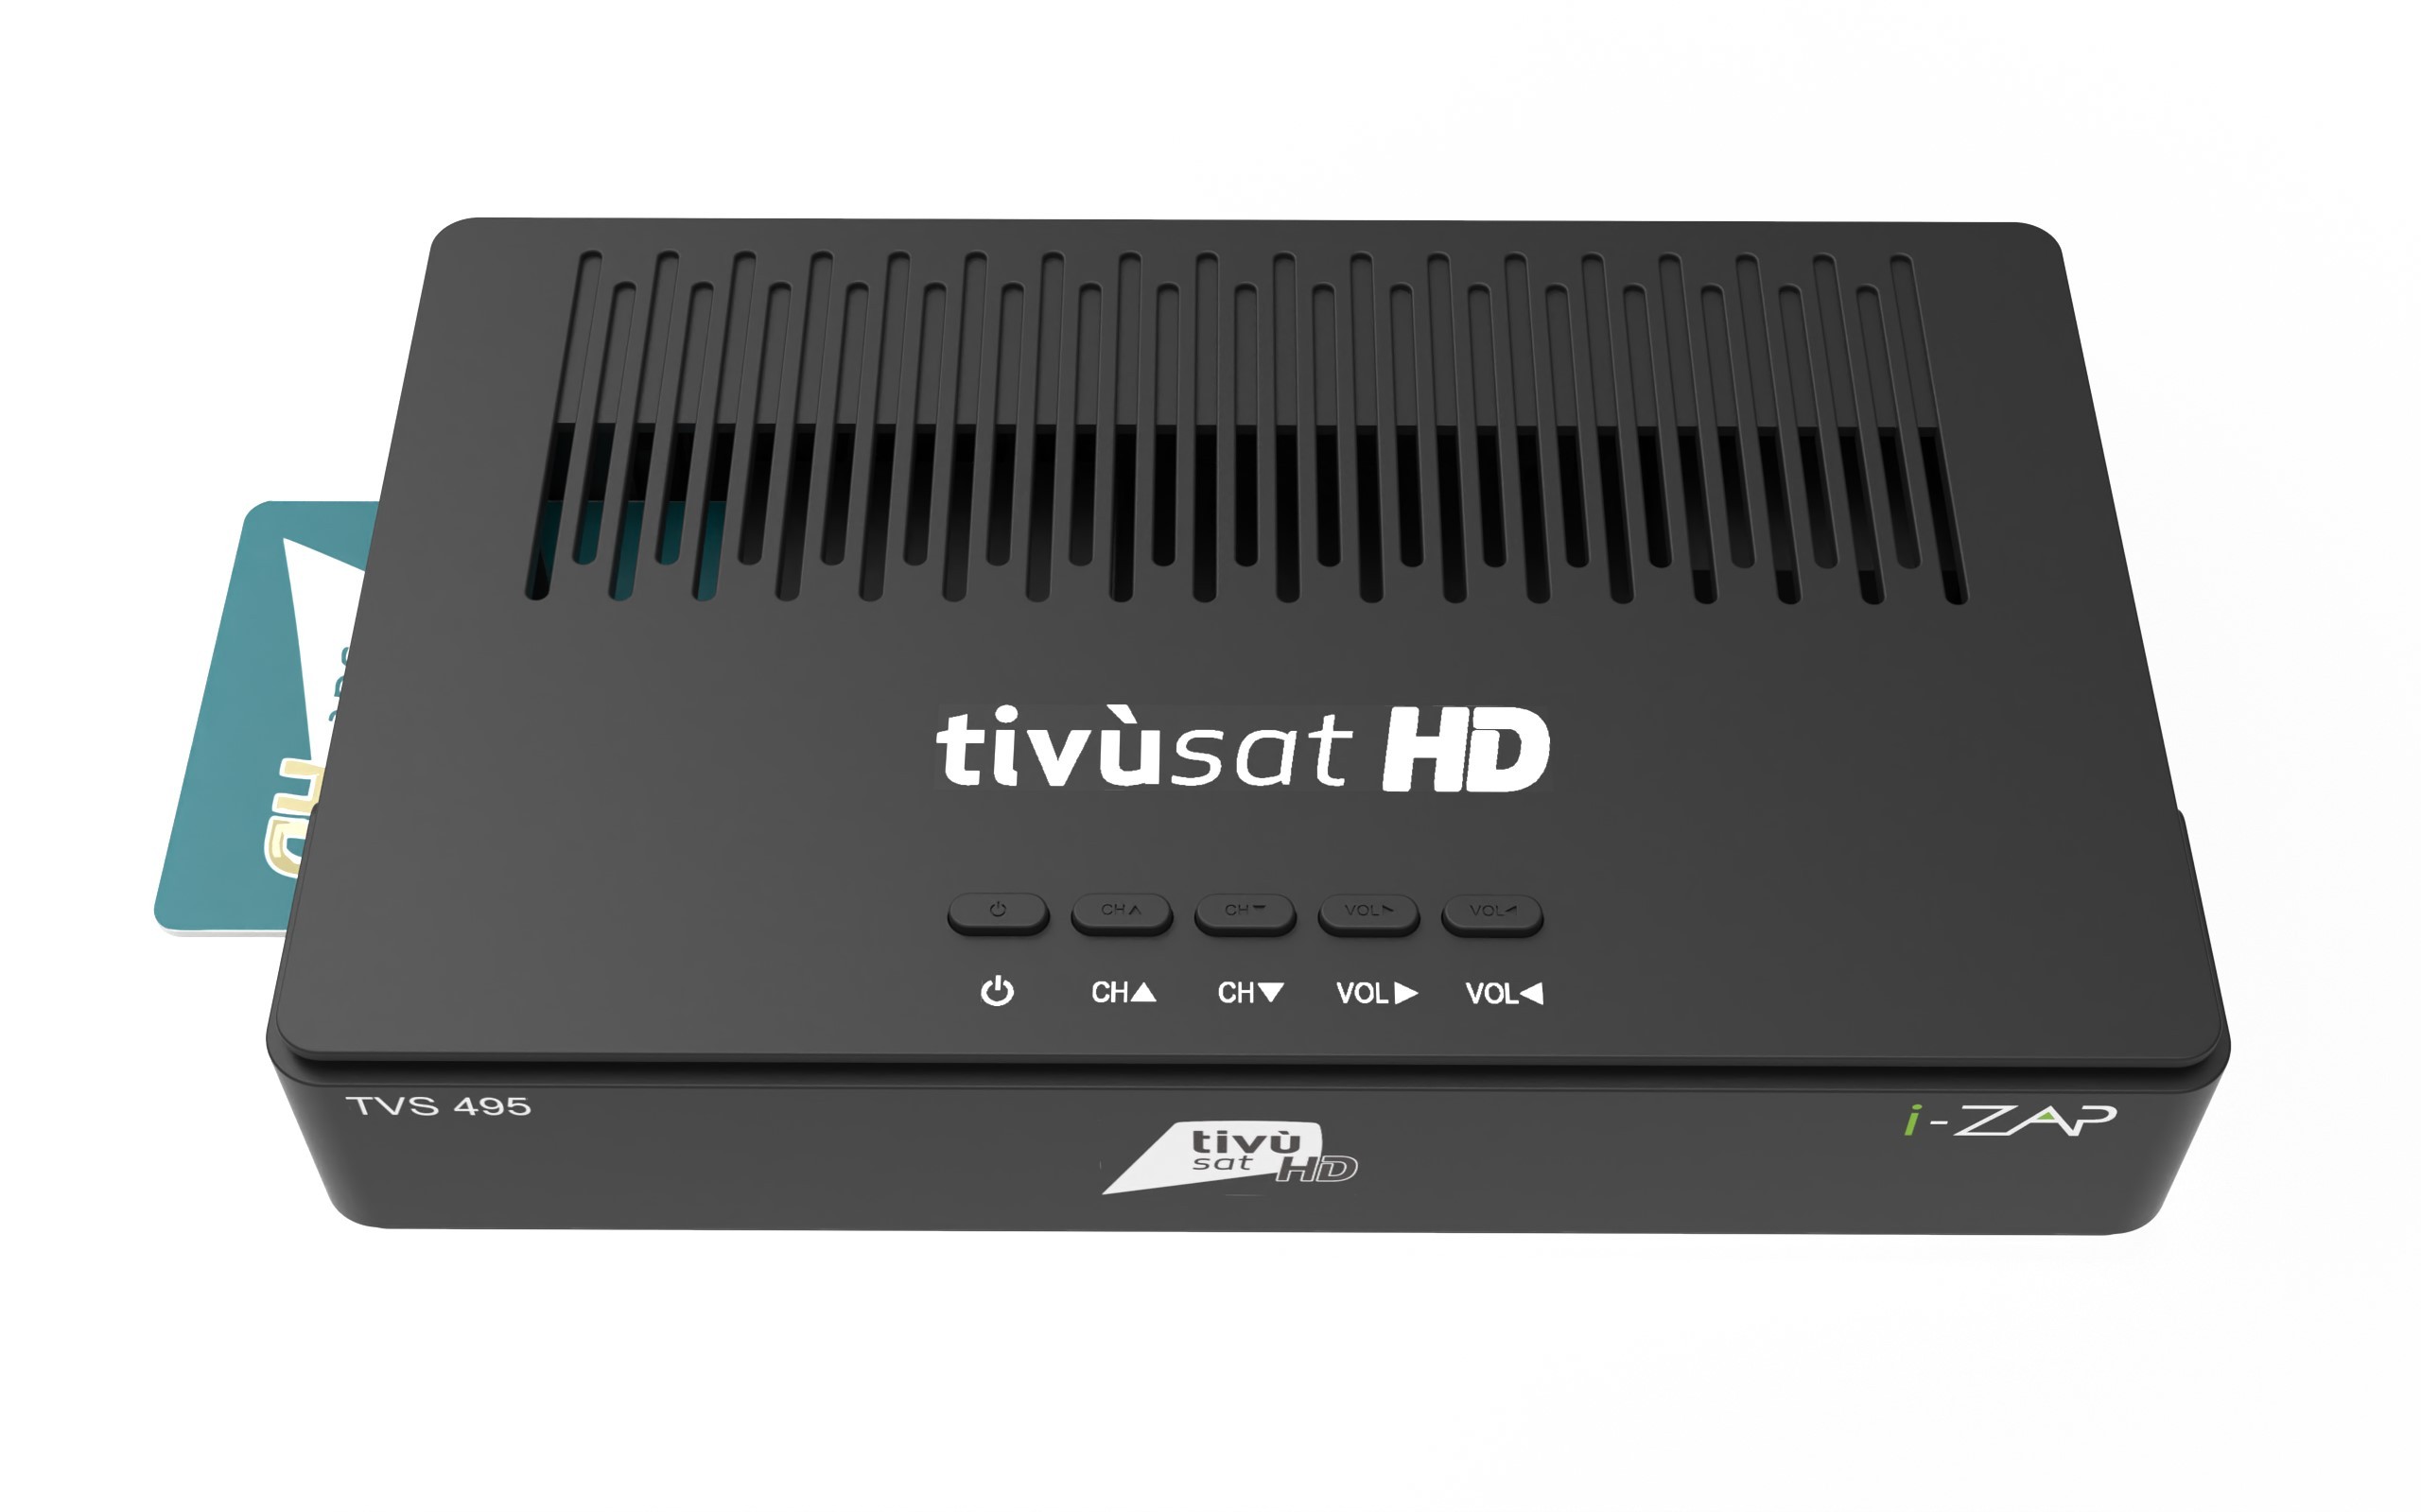 Decodificador digital de satélite i-can tvs495- hd